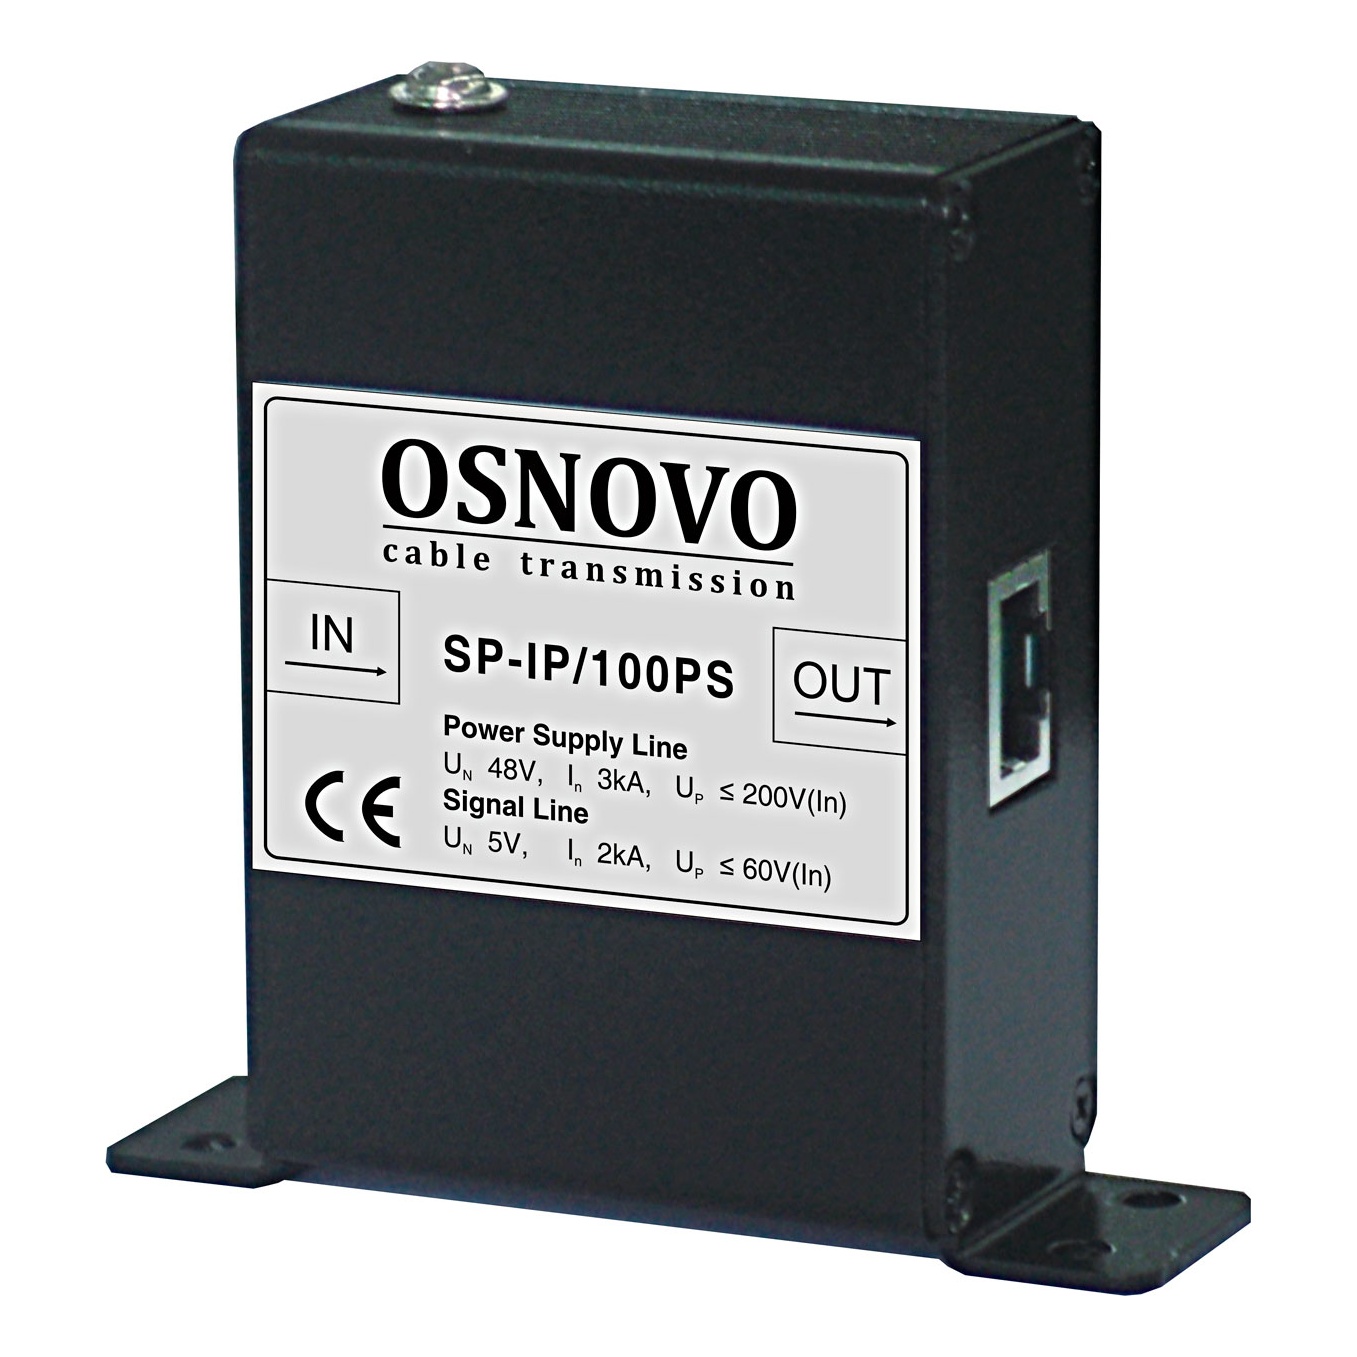 OSNOVO SP-IP/100PS Устройство грозозащиты для локальной вычислительной сети (скорость до 100Мбит/с) с защитой линий PoE (af/at, метод B, контакты 4/5, 7/8), двухступенчатая защита